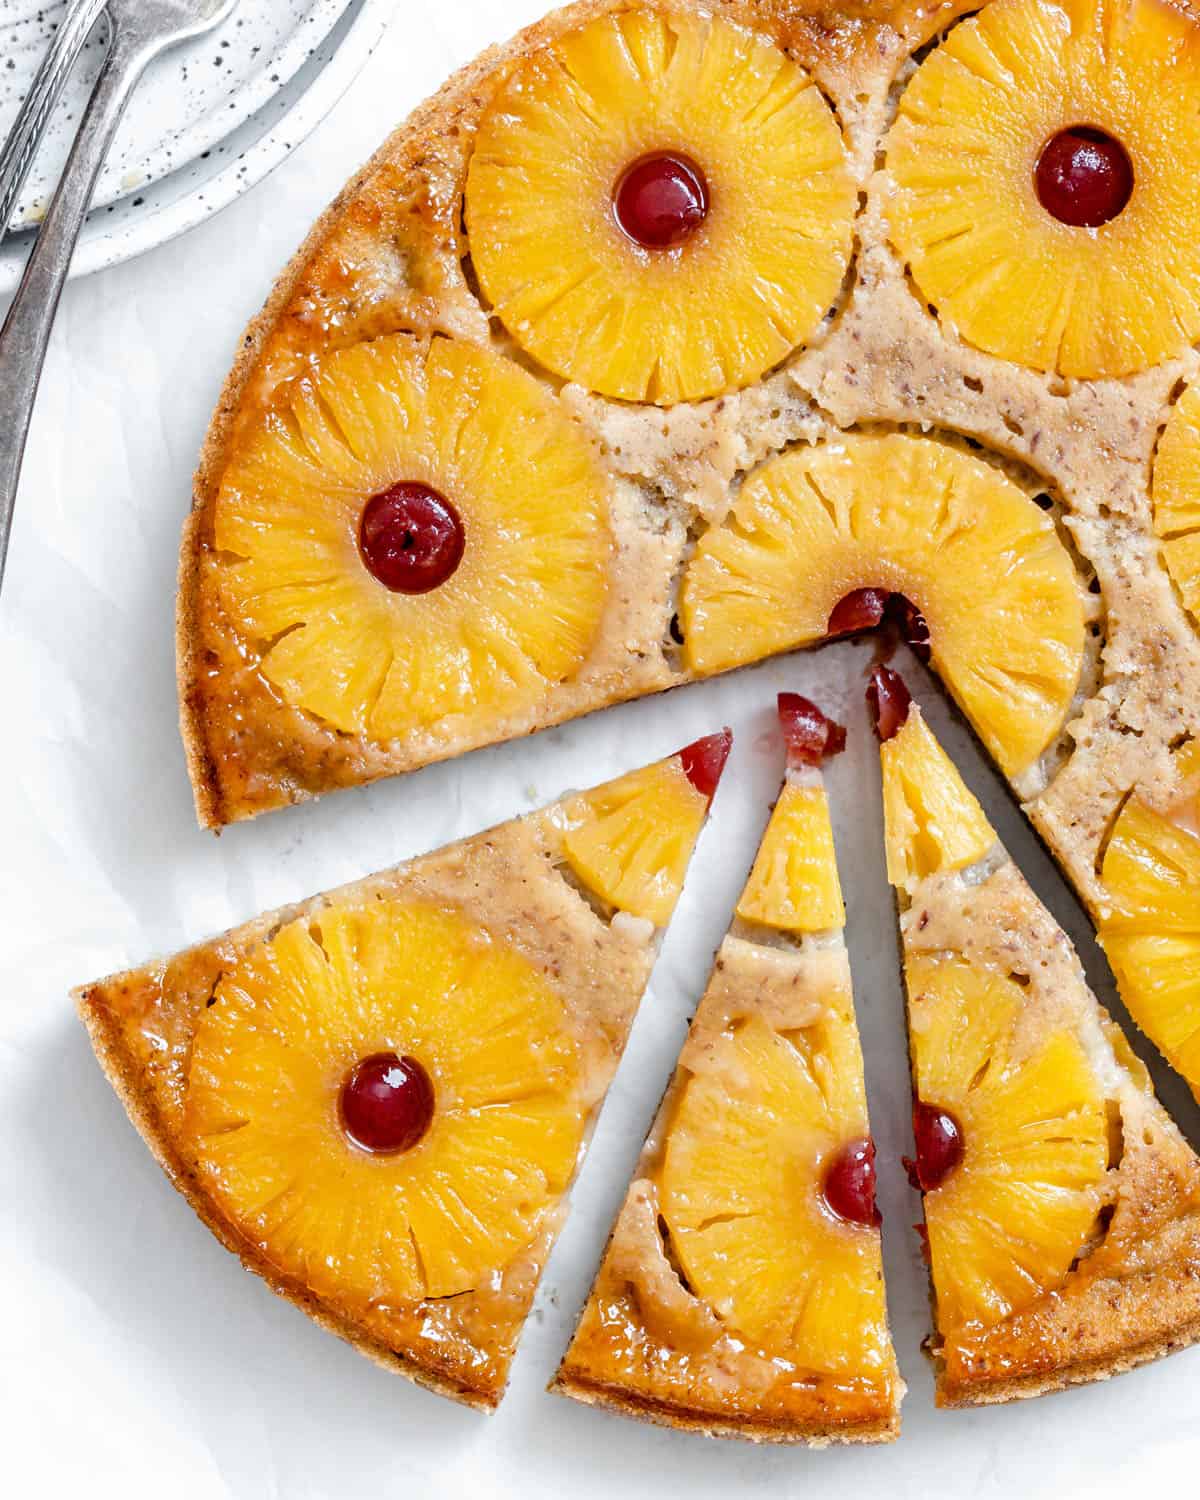 کیک وارونه آناناس وگان کامل شده بر روی یک سطح سبک